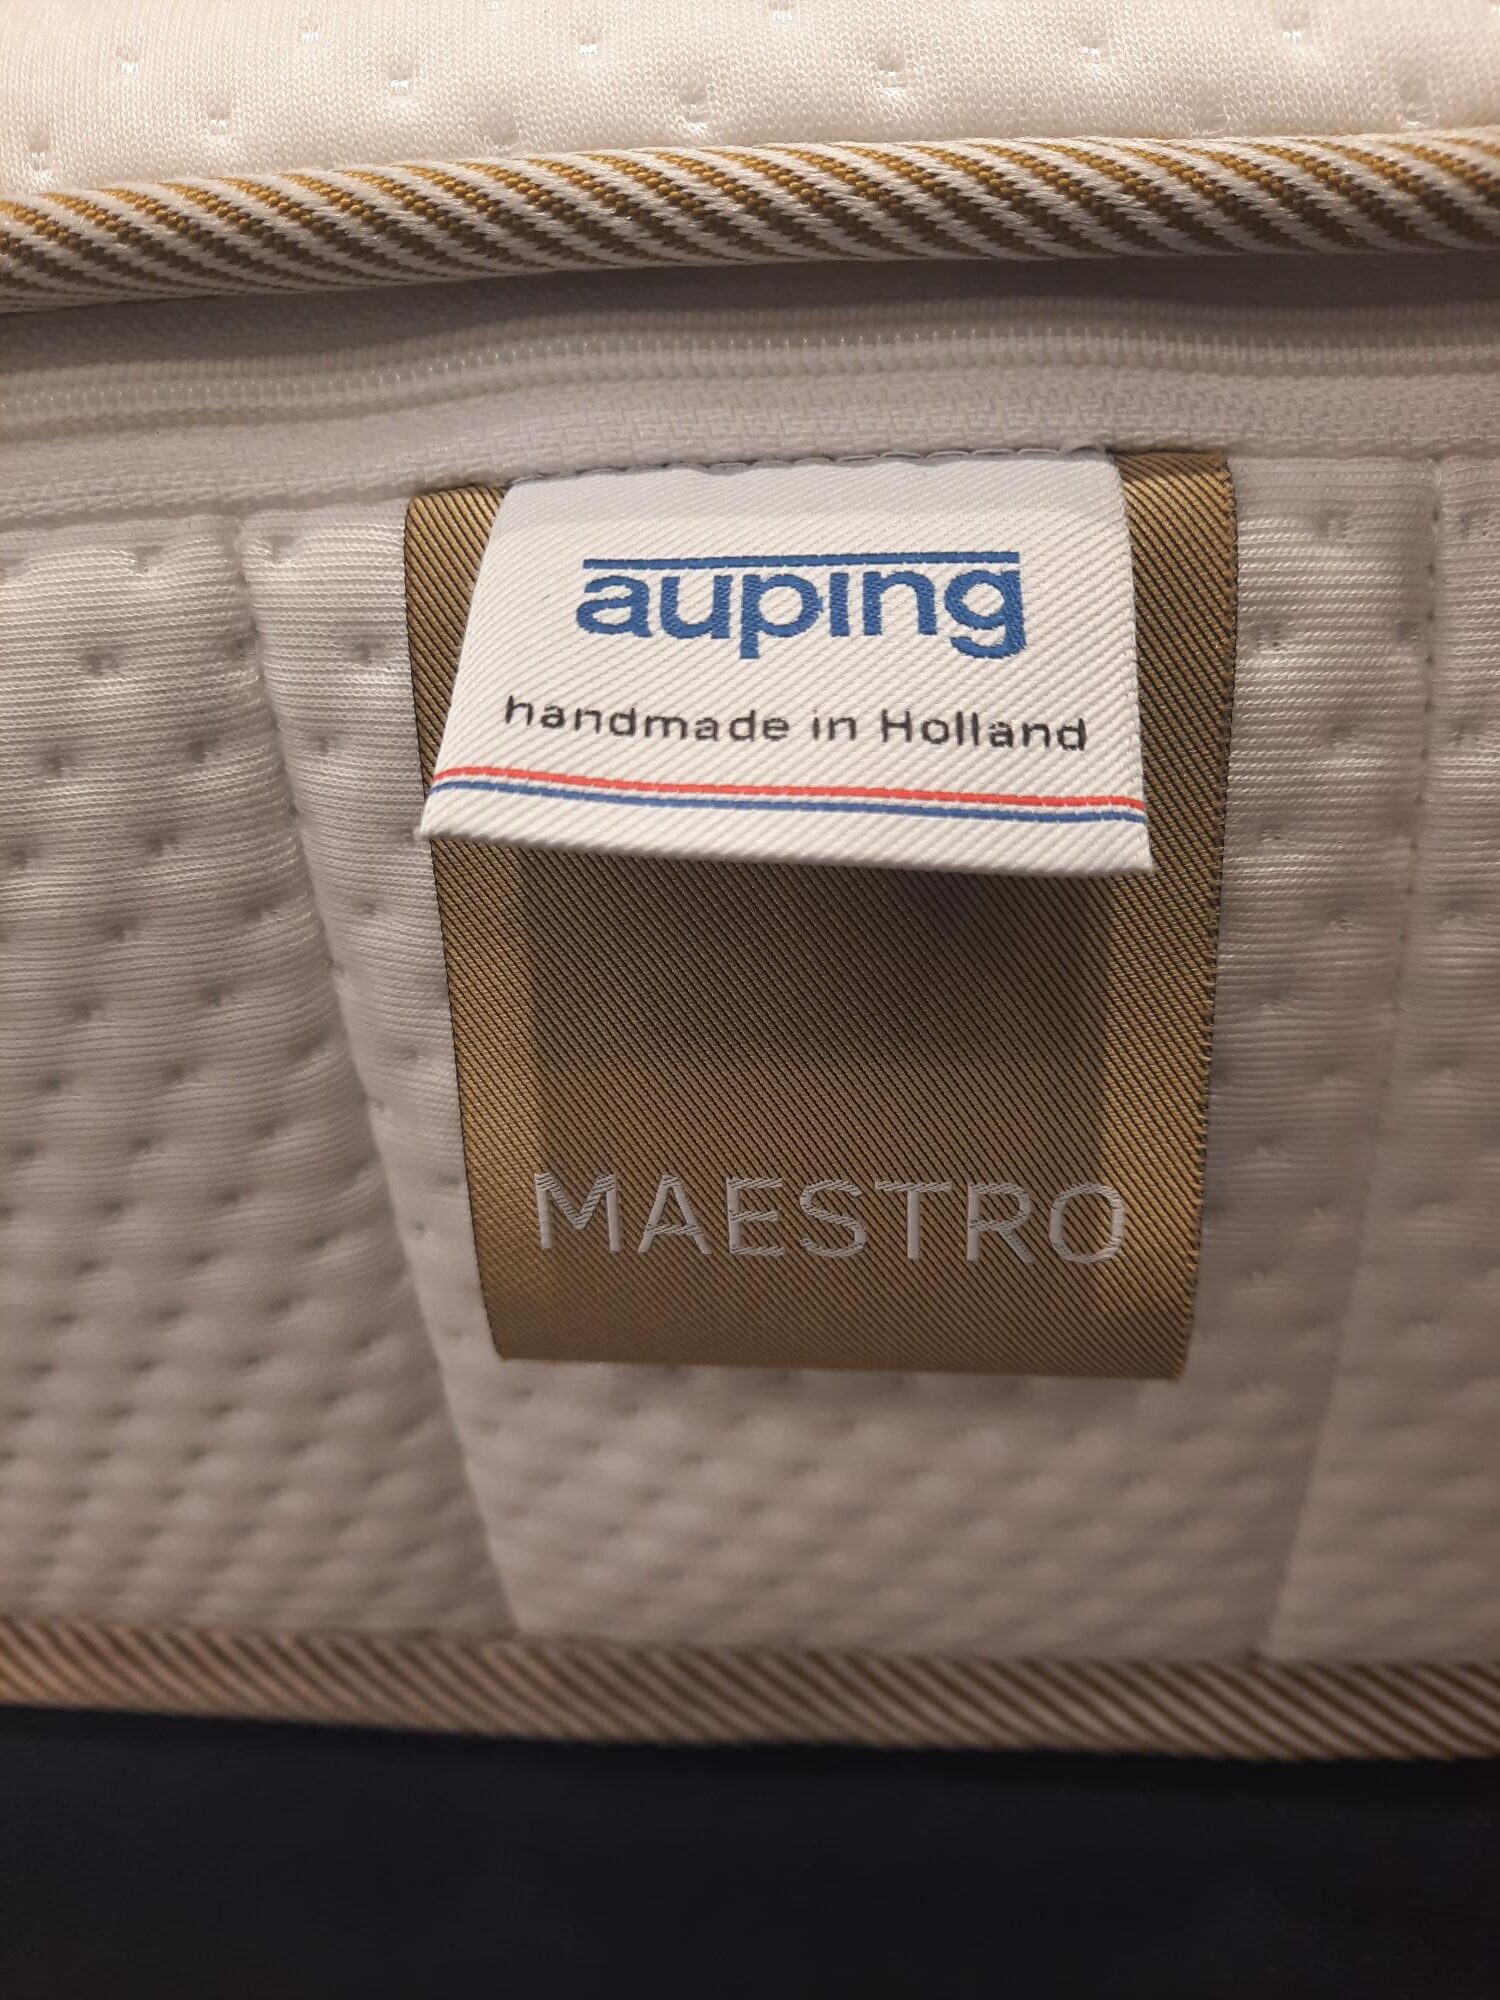 Bier nevel Bloeien Matras Auping Maestro 90x200 / soft | De Vries Slaapcomfort kopen?